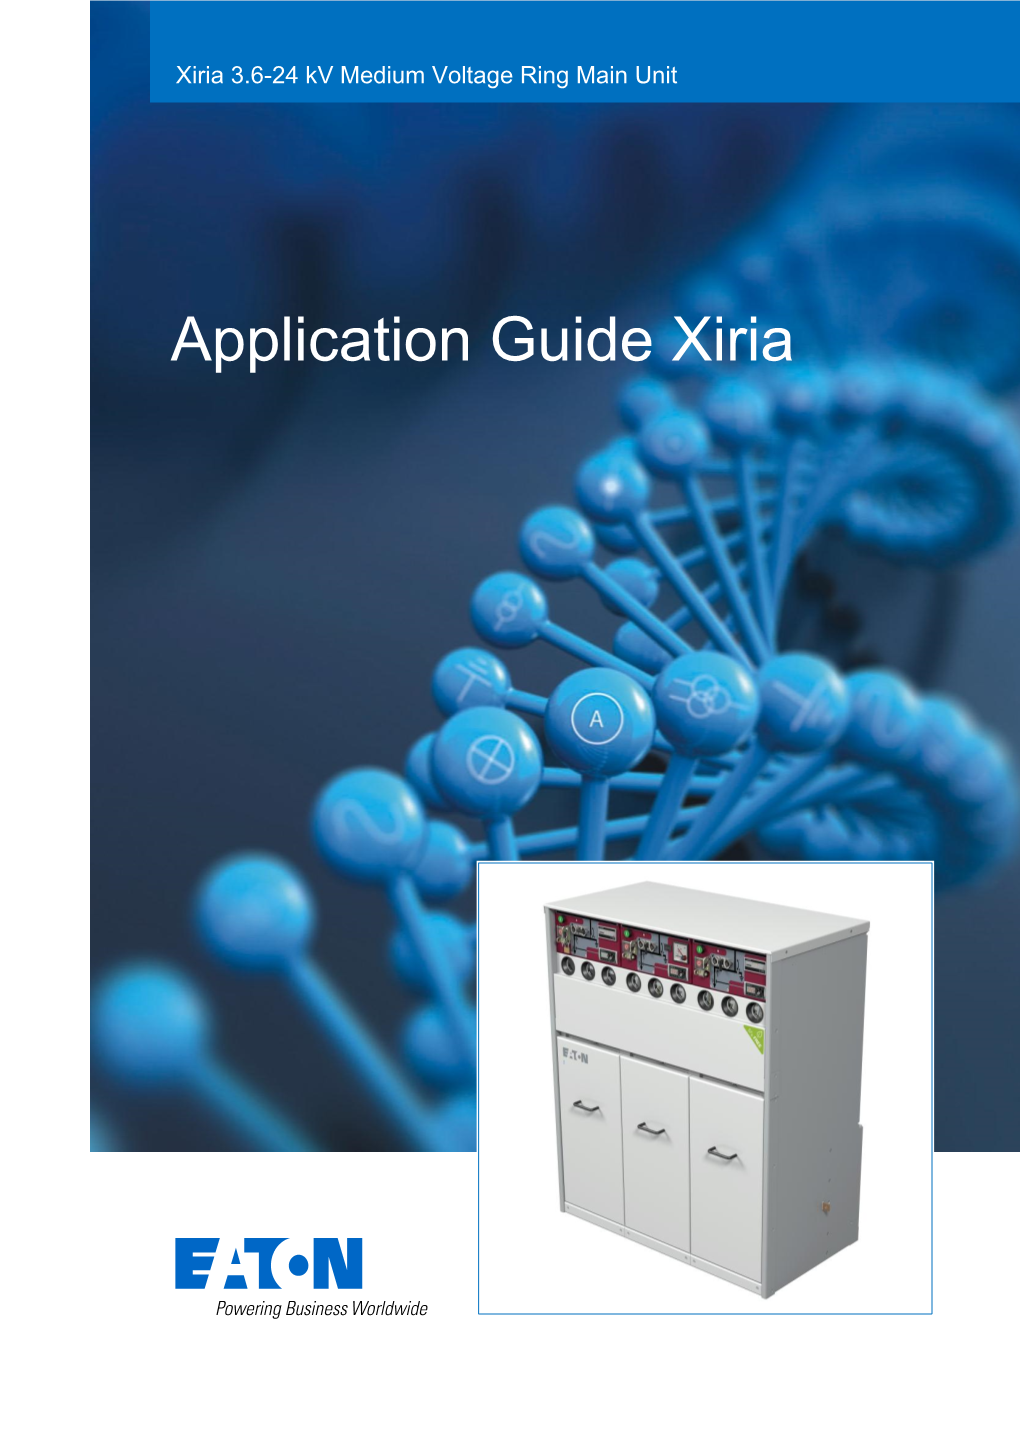 Application Guide Eaton Xiria